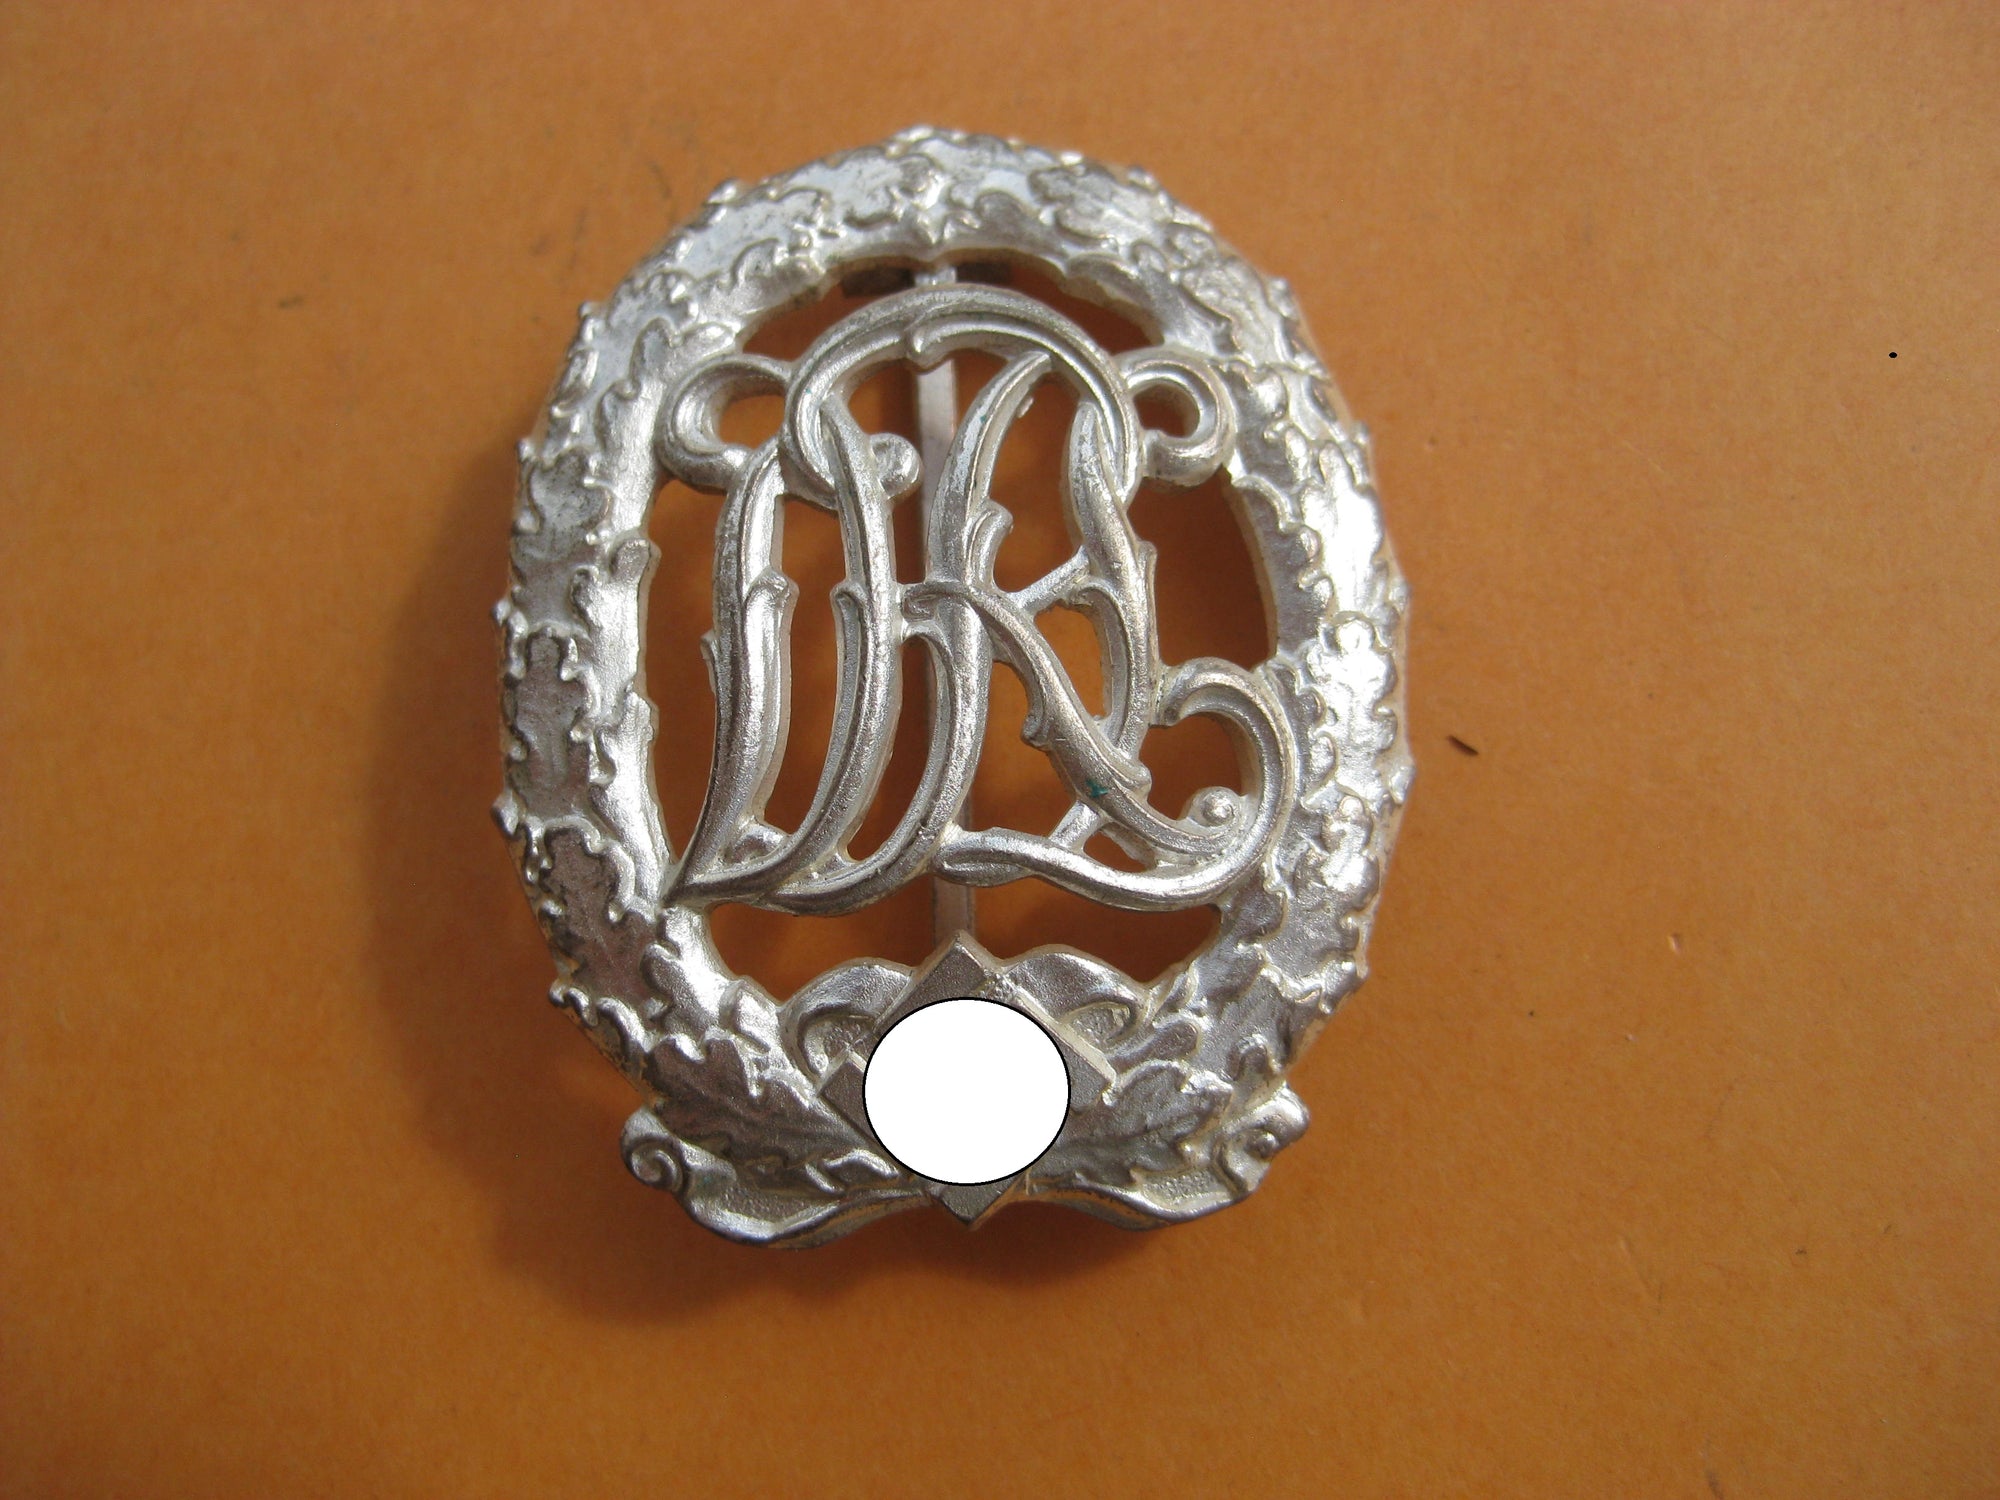 H.W. DRL Sportabzeichen in Silber mit Hersteller Wernstein Mint Condition